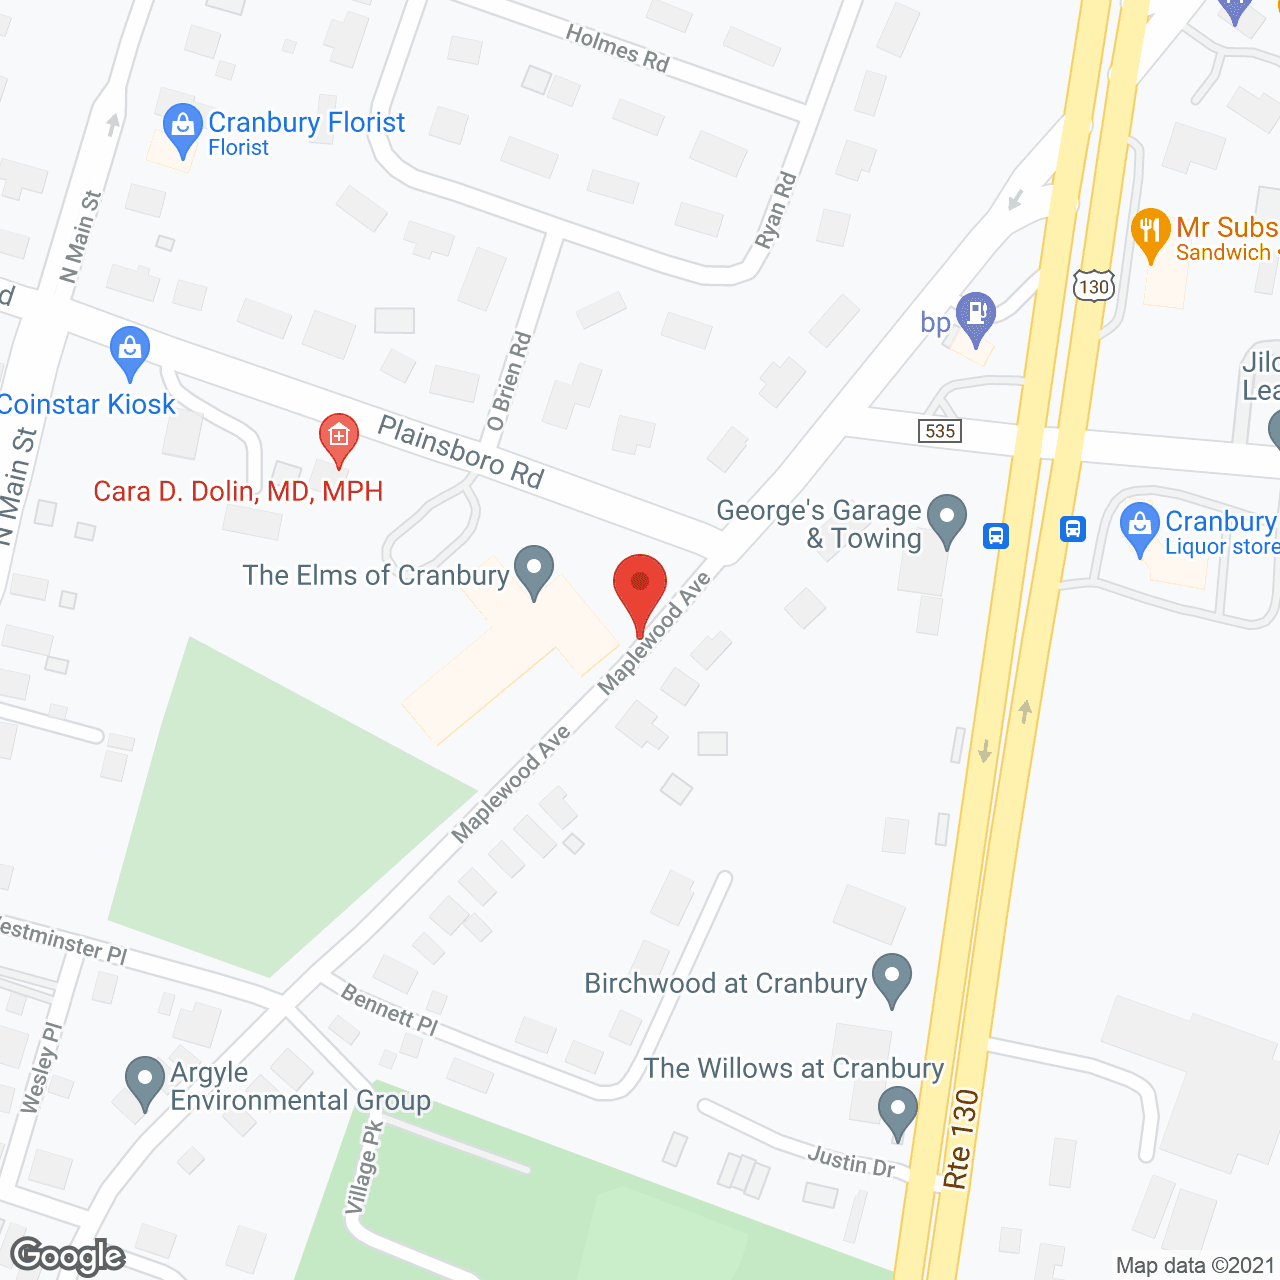 Elms of Cranbury in google map